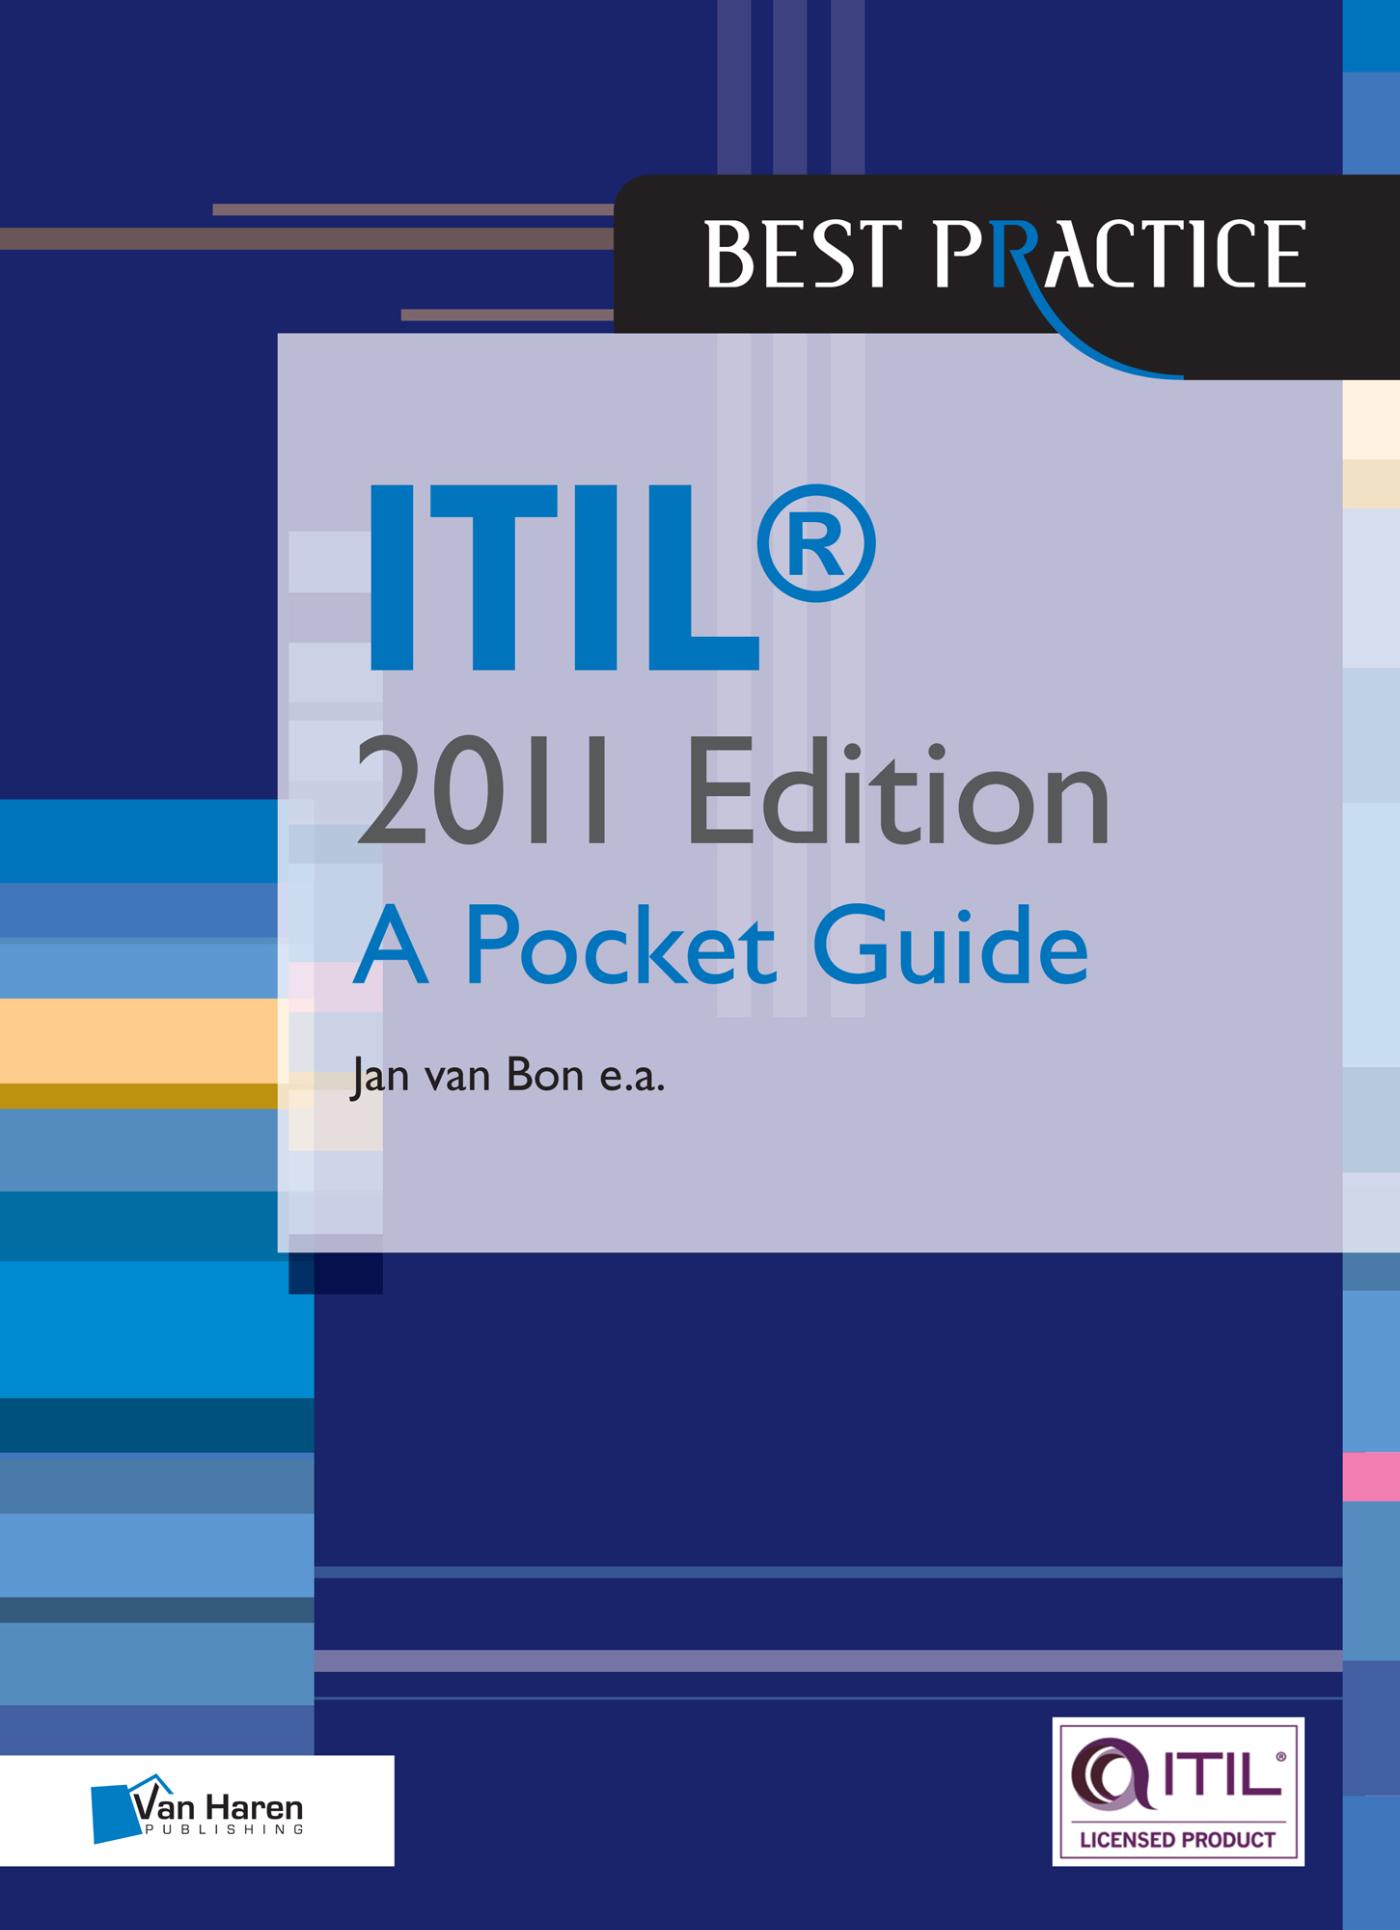 ITIL a pocket edition / 2011 (Ebook)